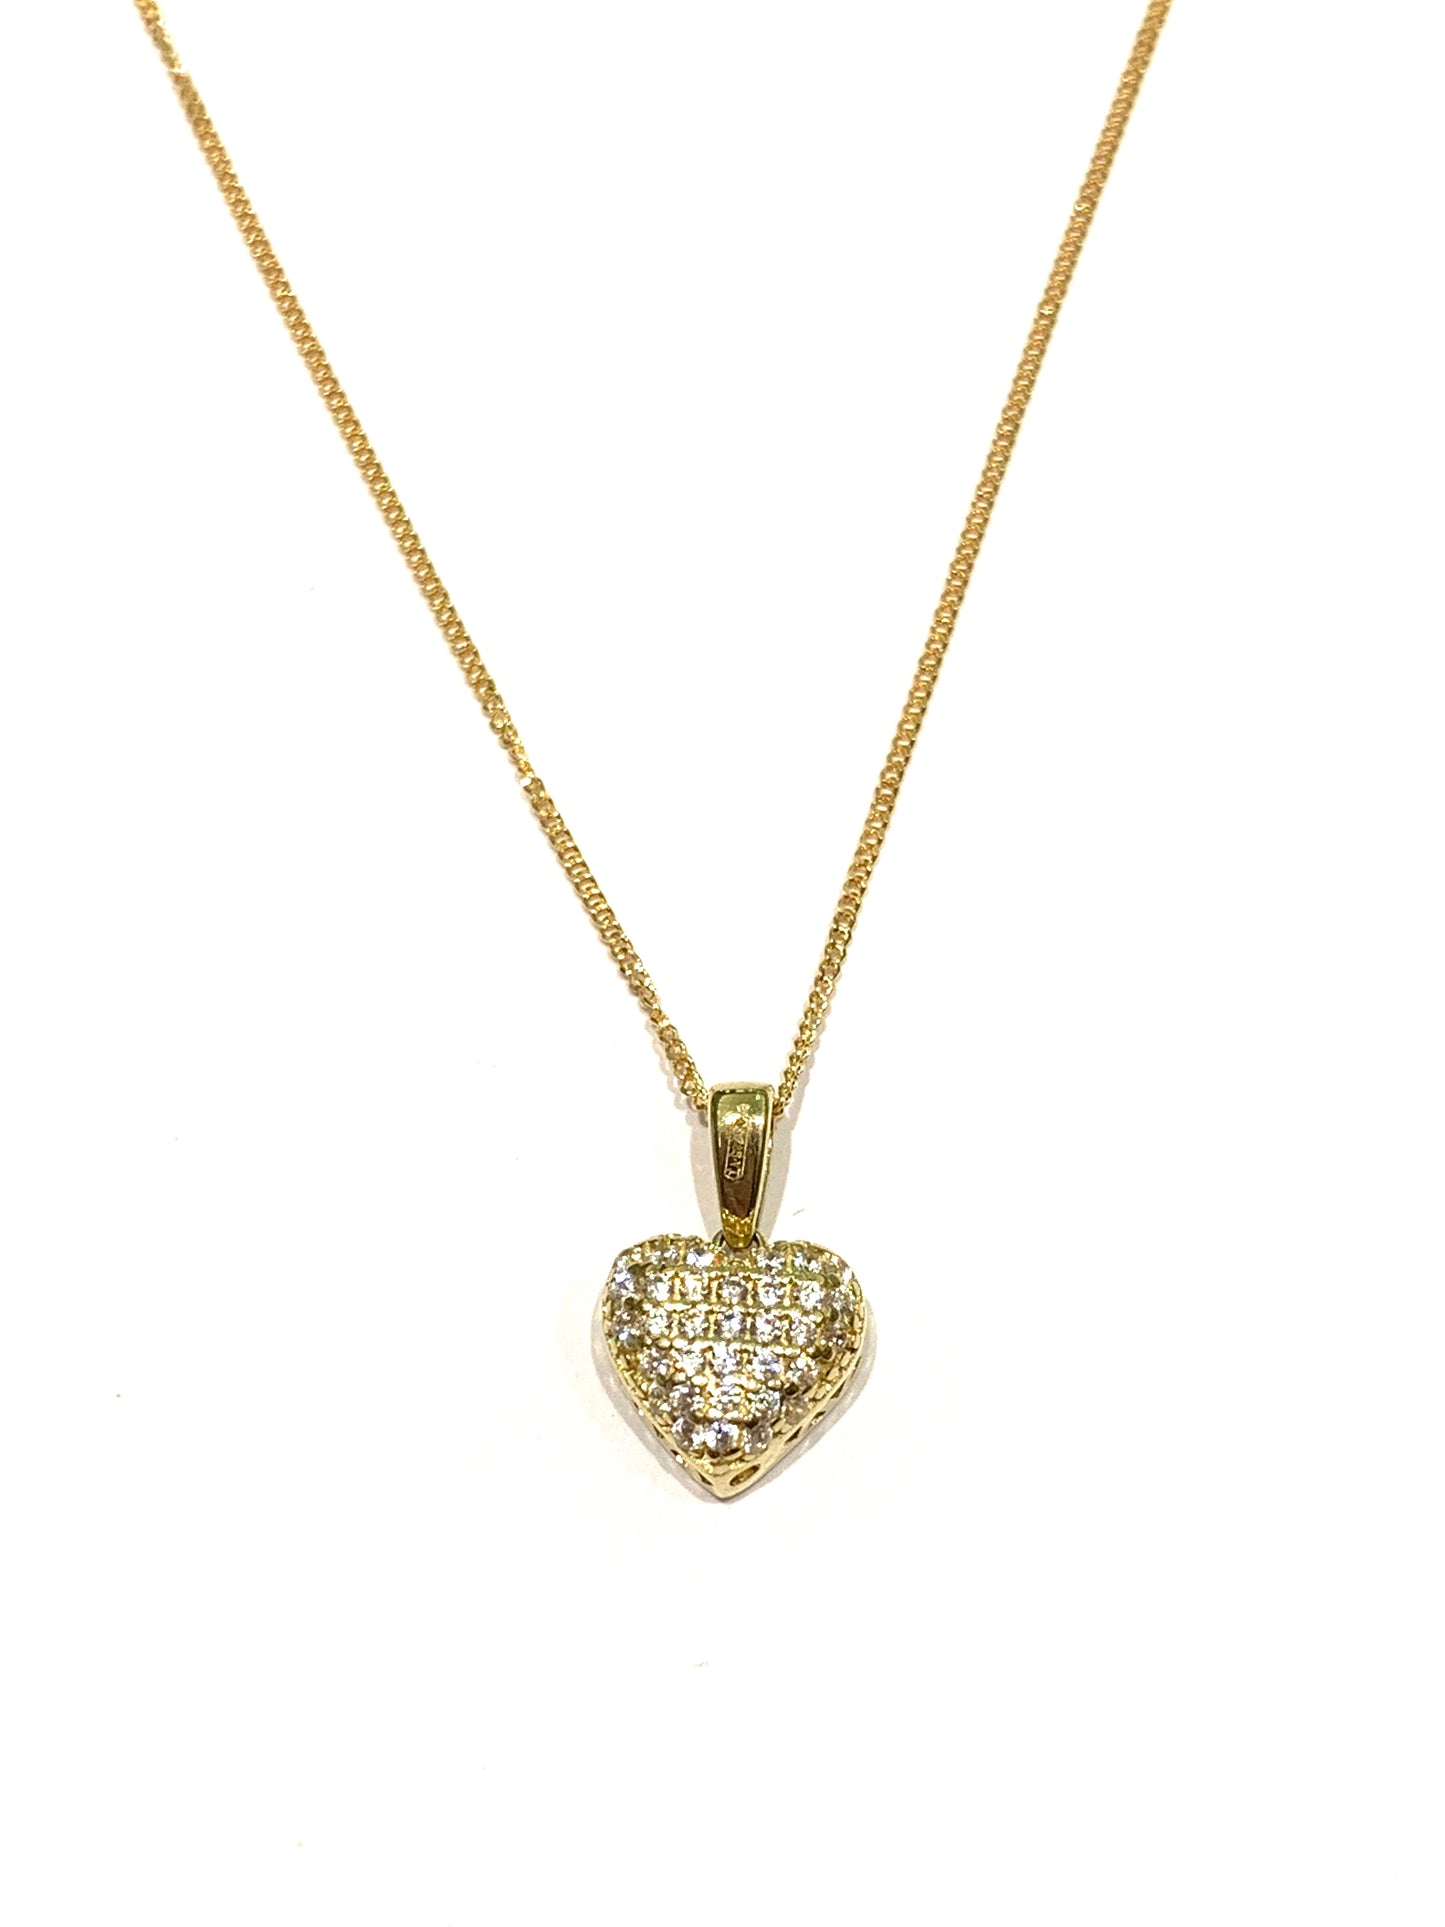 Collana in oro giallo 9kt con cuore ricoperto da zirconi.  Lunghezza catena 41 cm.  Dimensione cuore 1,3 cm incluso anellino.  